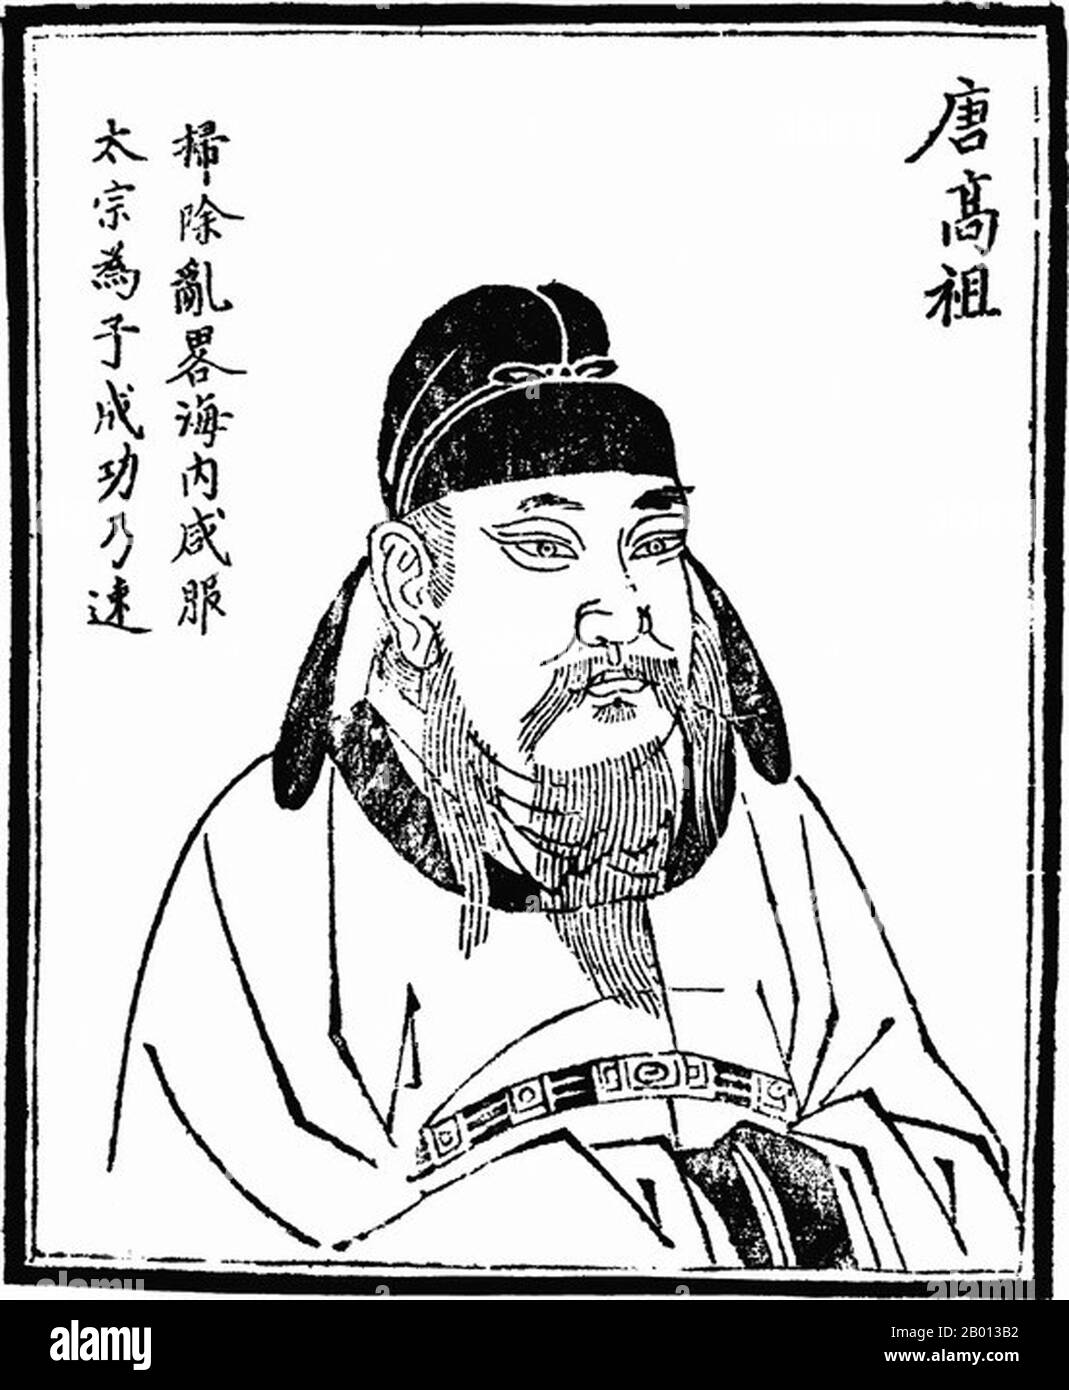 Cina: L'imperatore Gaozu (Tang Liyuan, 566 - 25 giugno 635), 1 ° sovrano della dinastia Tang (r. 618-626). Illustrazione, c. 19 ° secolo. L'imperatore Gaozu di Tang, nato li Yuan, nome di cortesia Shude, fu il fondatore della dinastia Tang della Cina, e il primo imperatore di questa dinastia dal 618 al 626. Il regno dell'imperatore Gaozu si concentrò sull'Unione dell'impero sotto il Tang. Aiutato da li Shimin, che ha creato Principe di Qin, ha sconfitto tutti gli altri contendenti. Nel 628, la dinastia Tang era riuscita ad unire tutta la Cina. Foto Stock